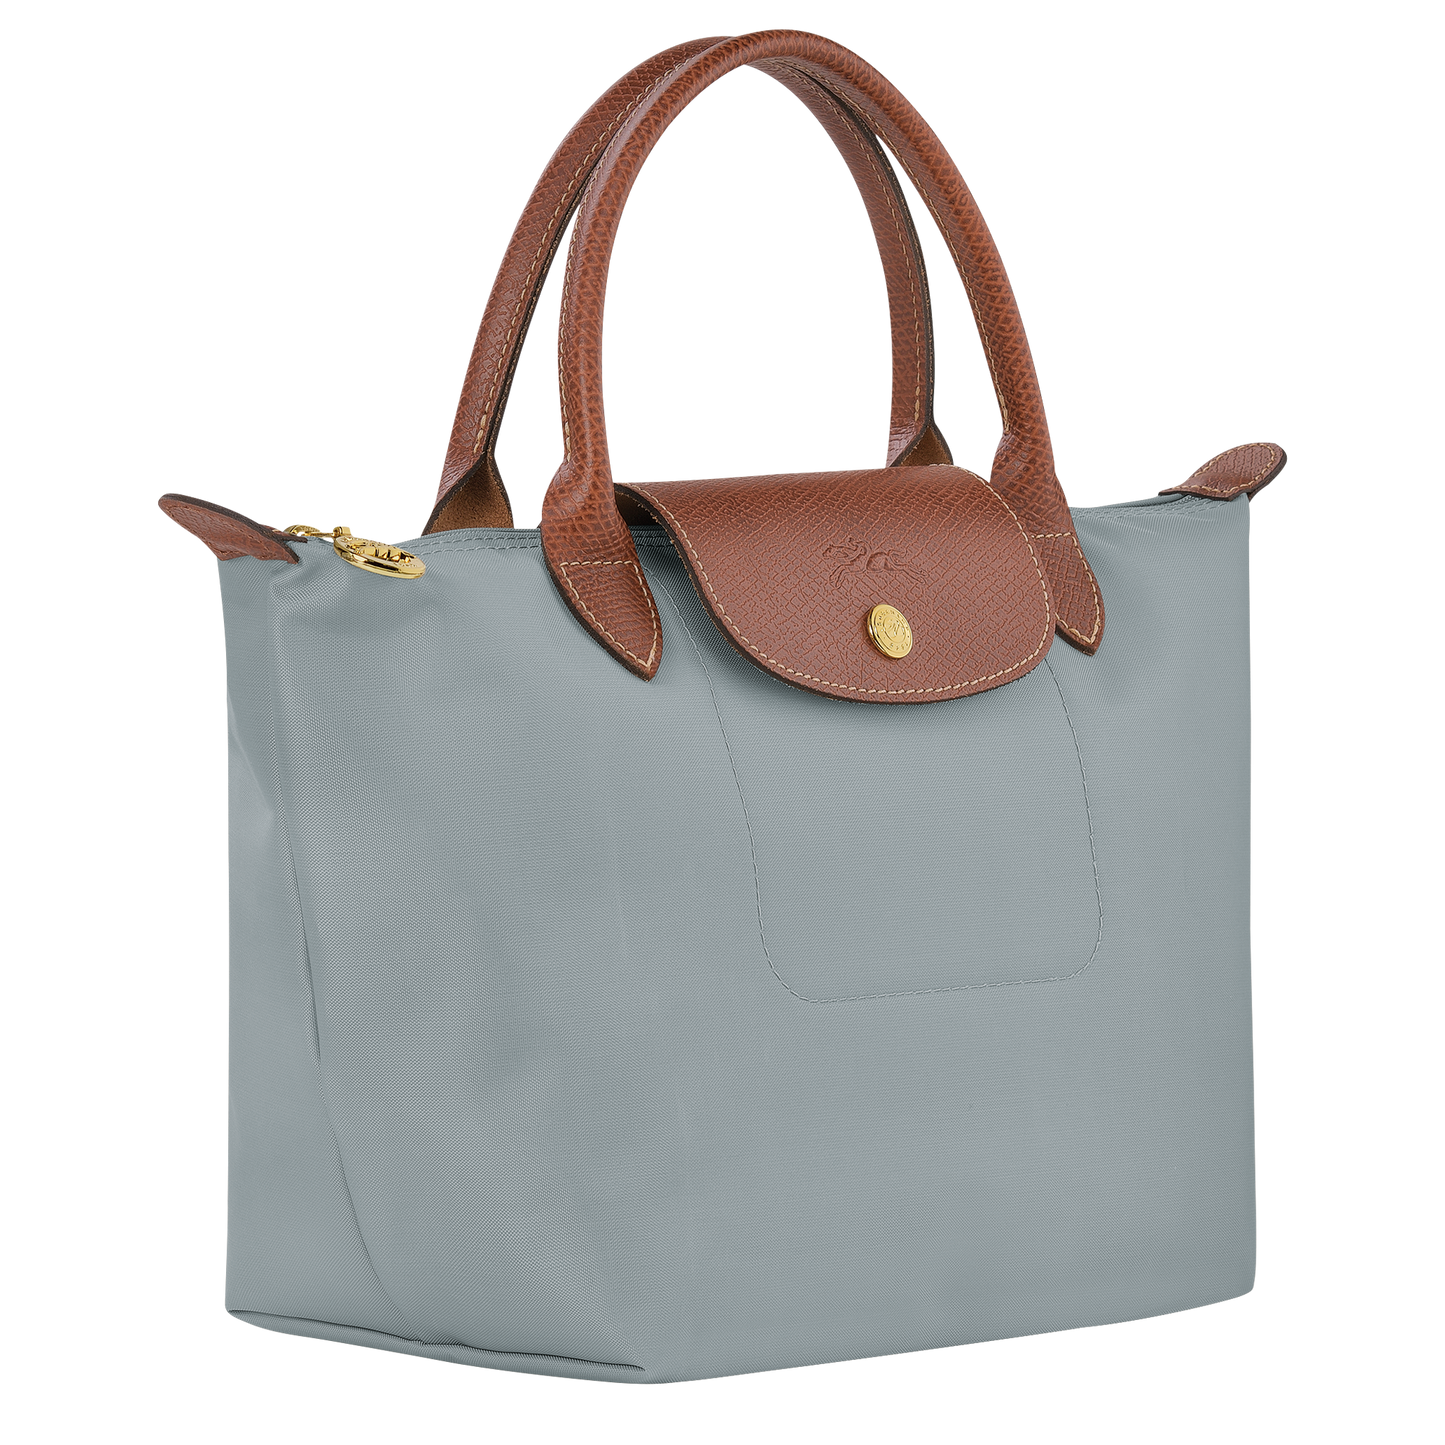 Le Pliage Original Handbag S